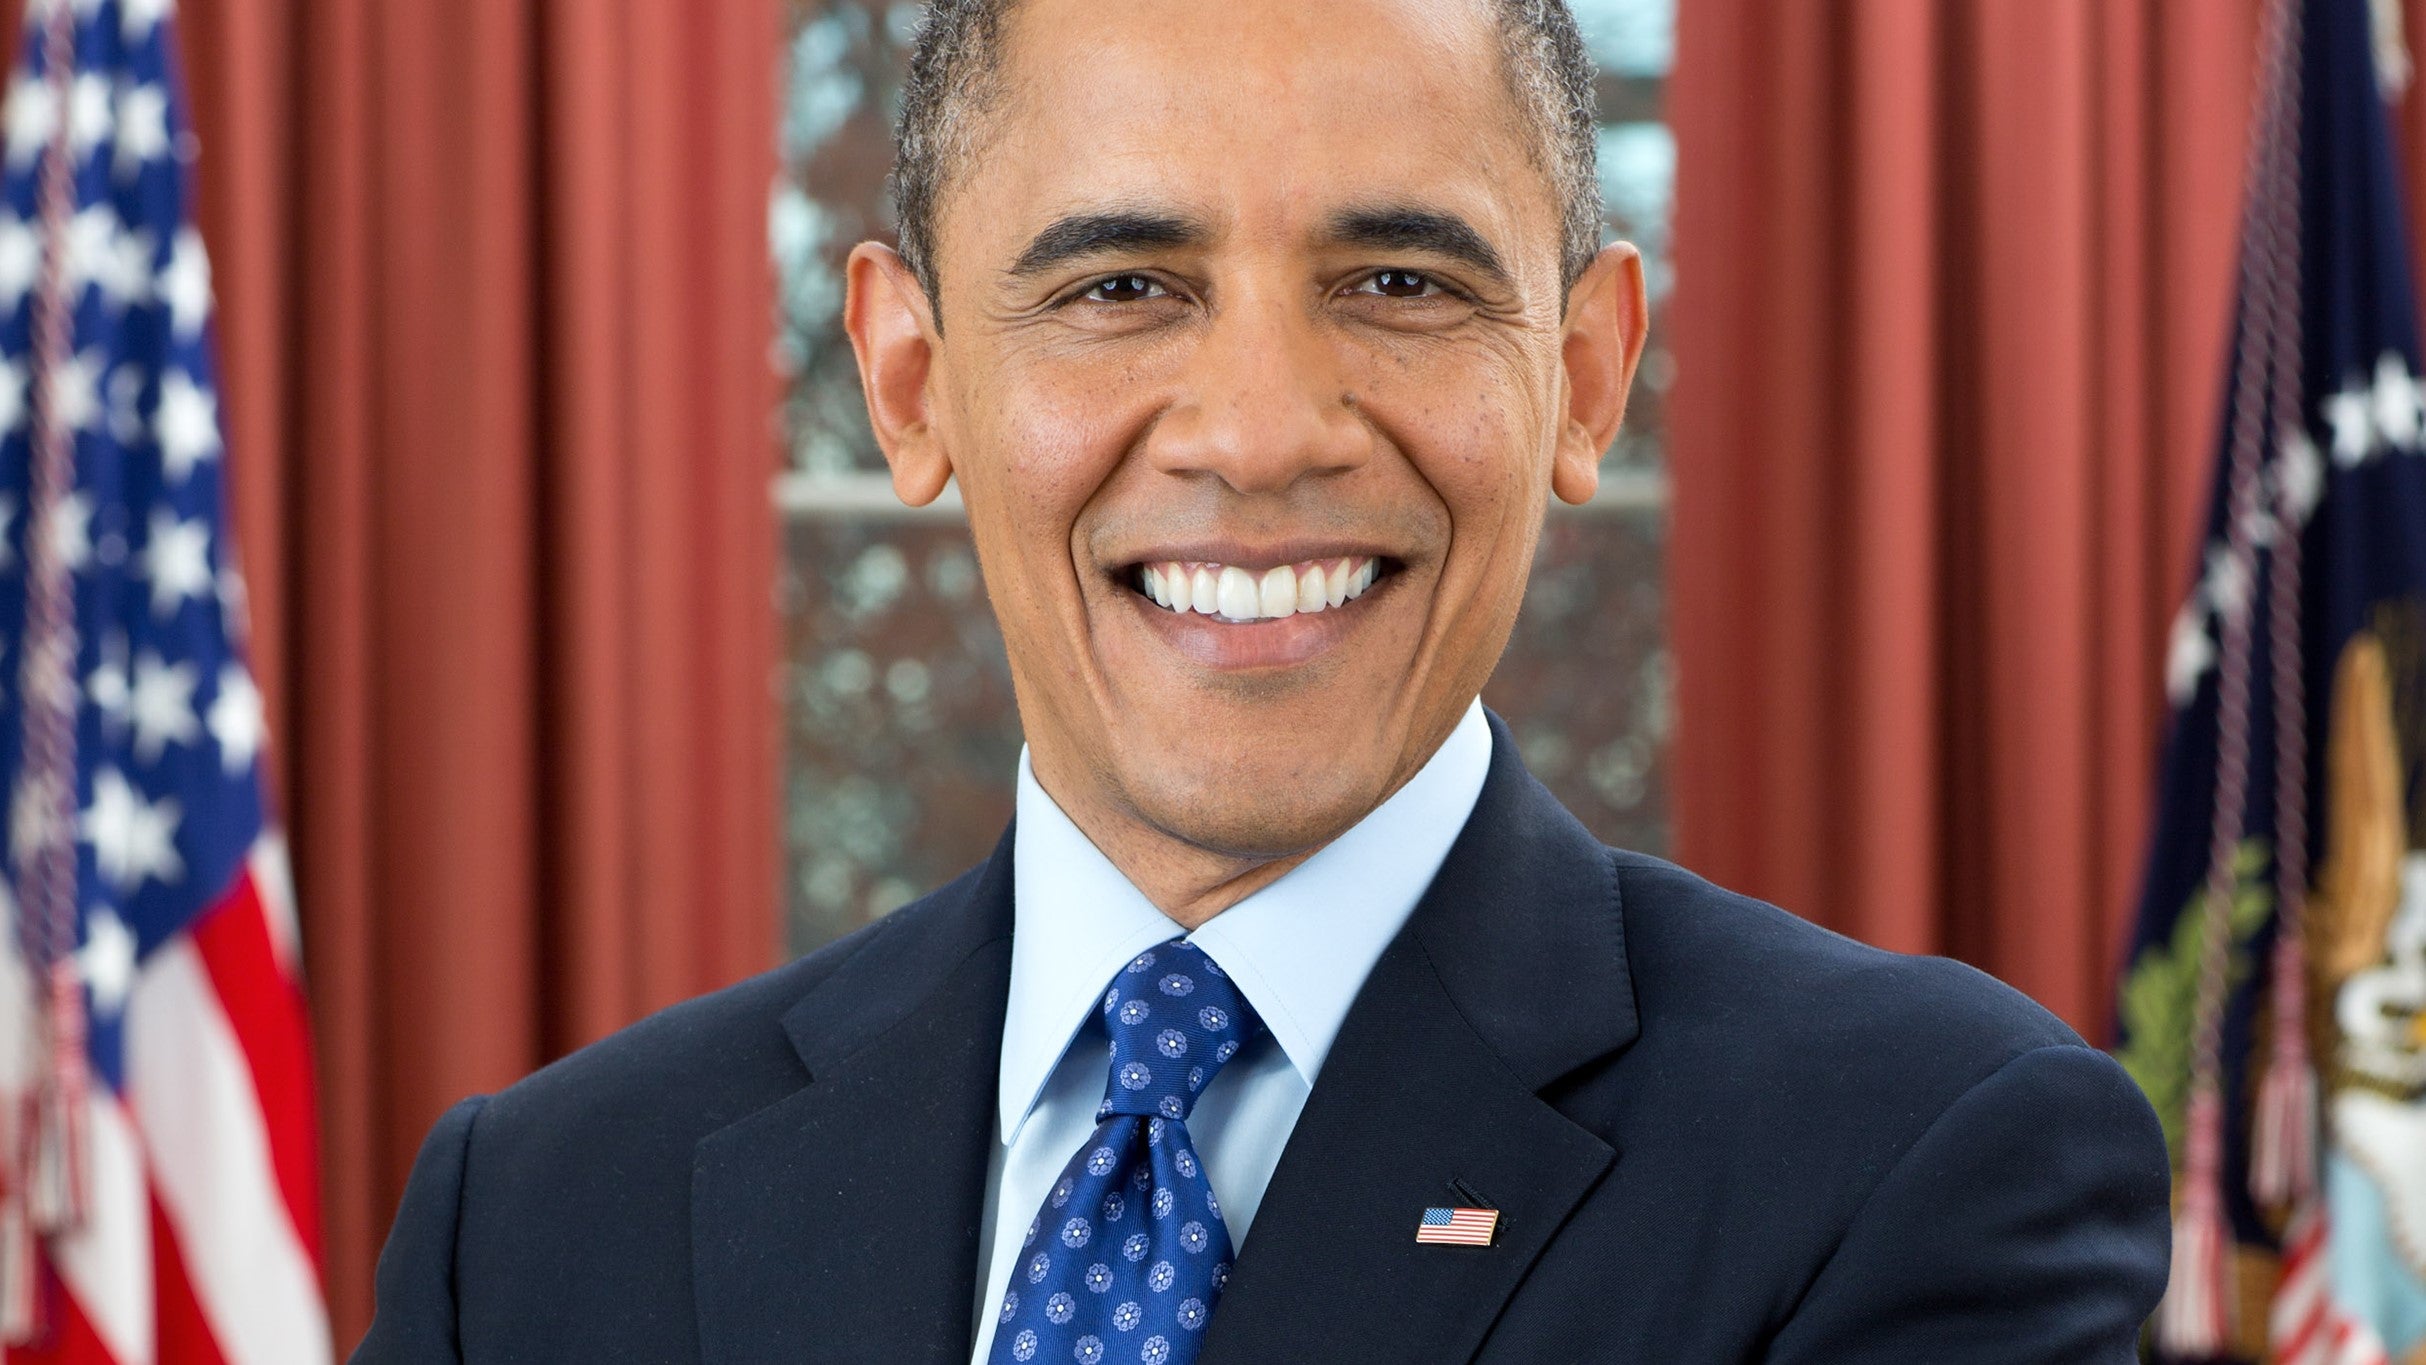 Barack Obama presale information on freepresalepasswords.com